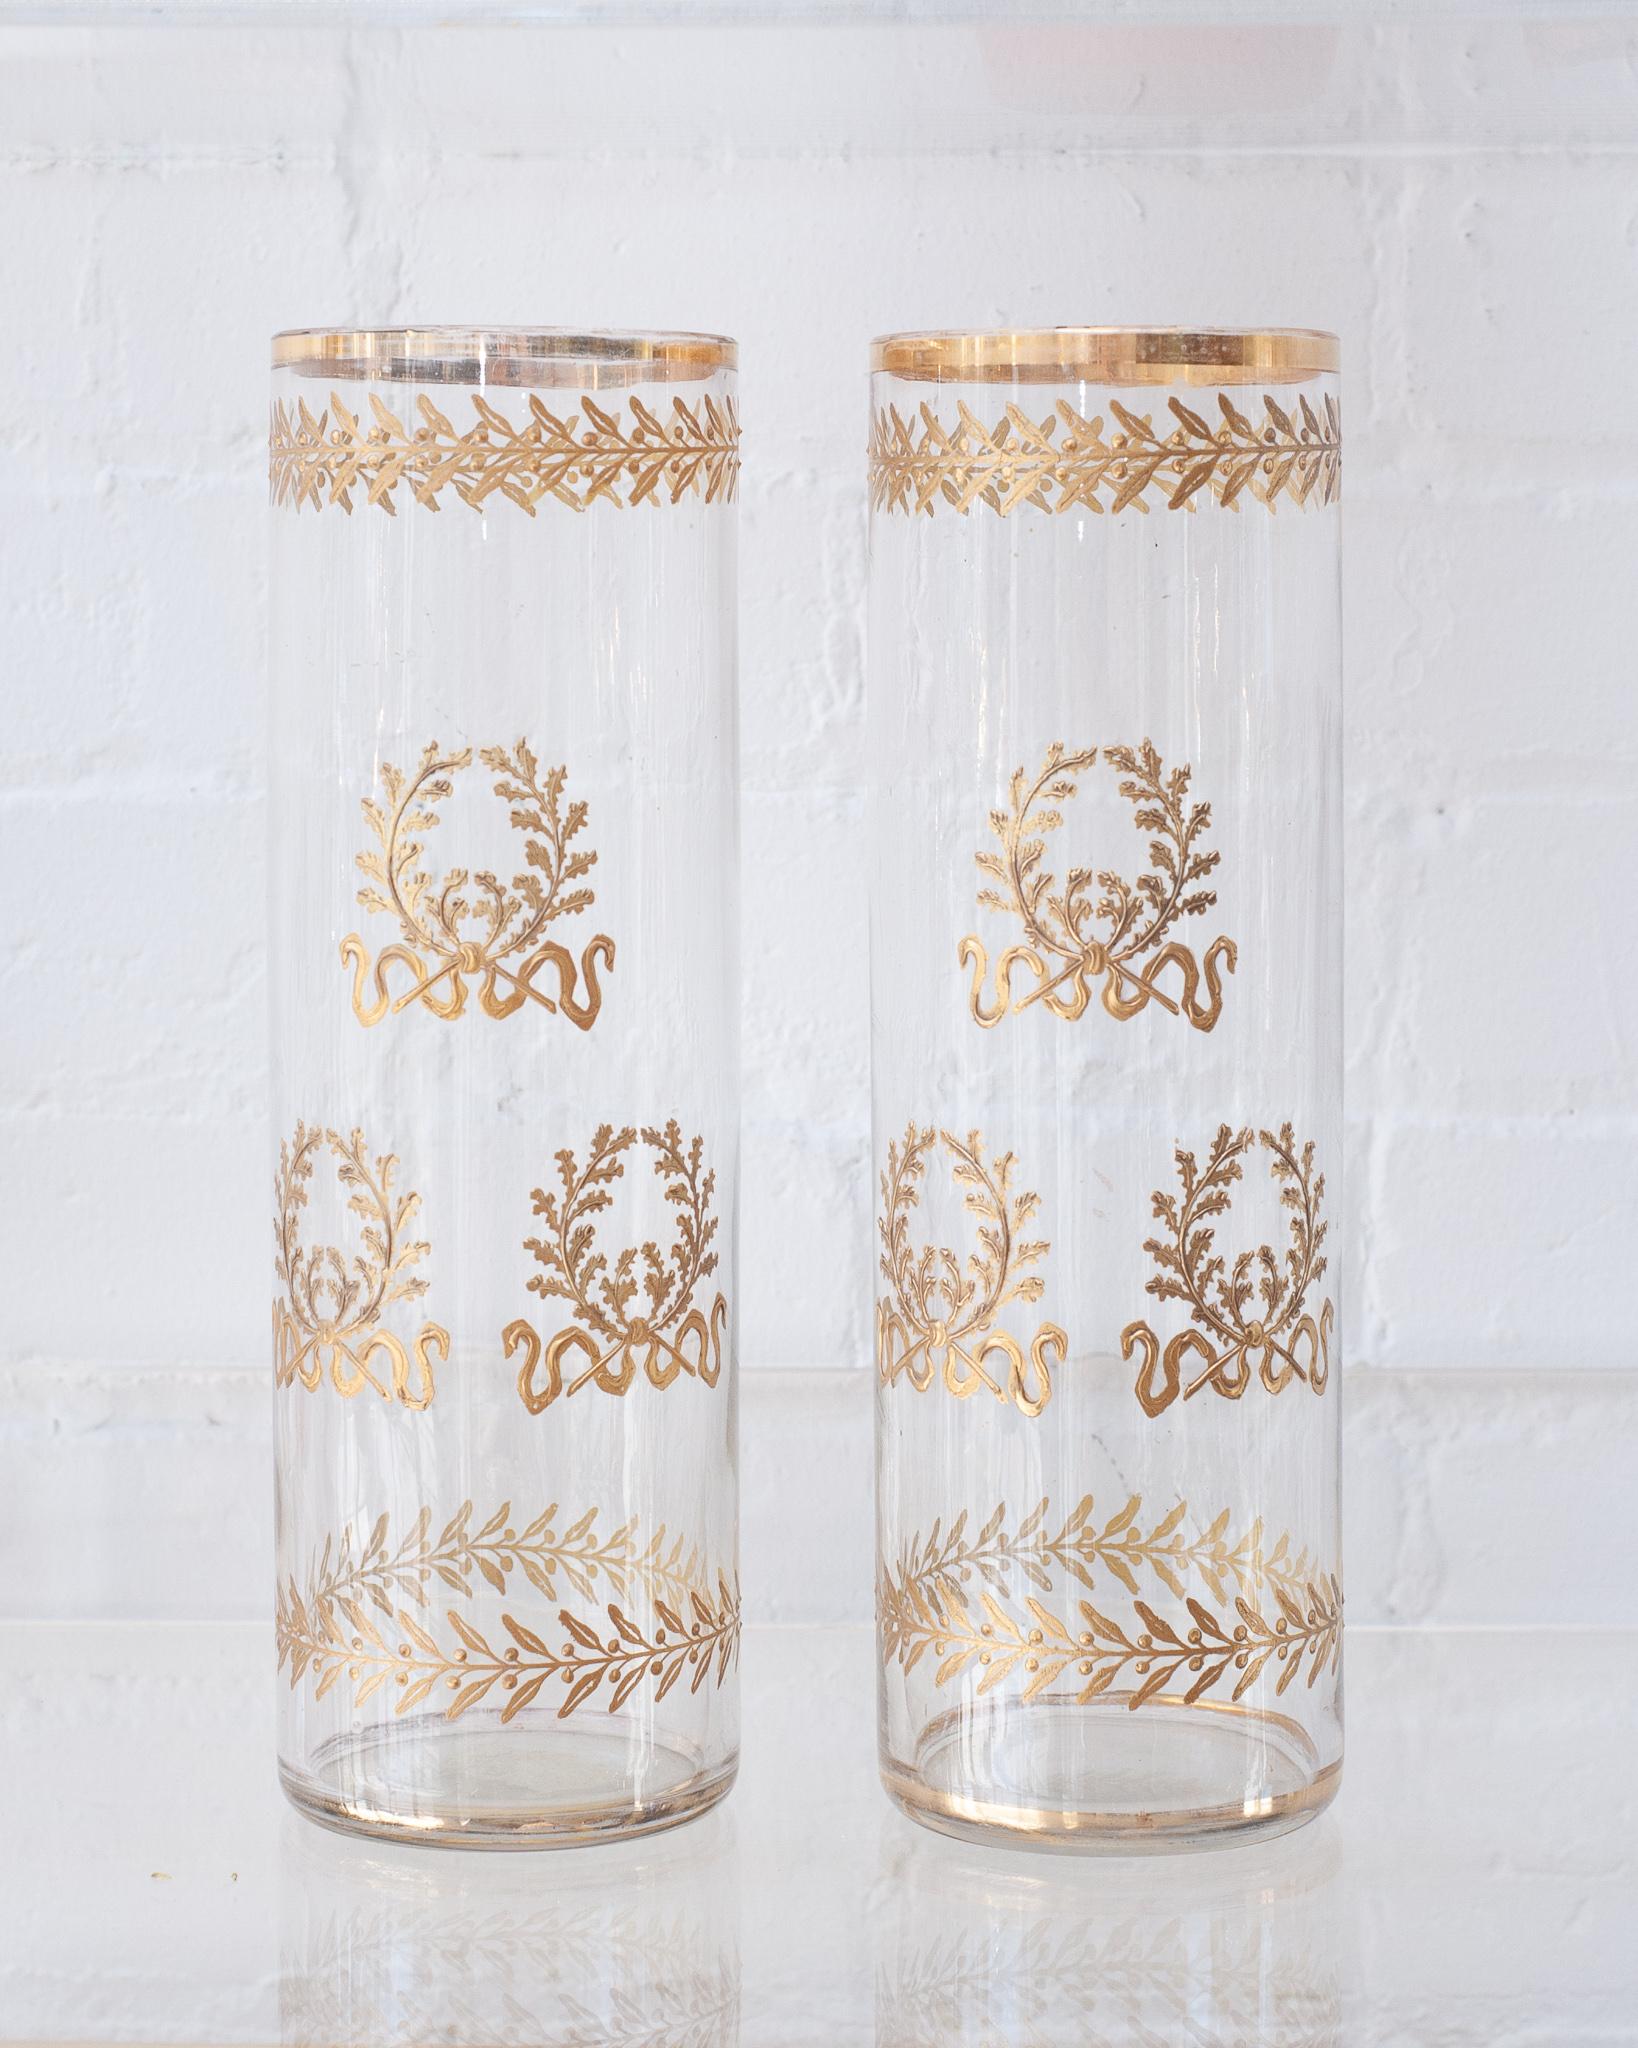 Ein wunderschönes Paar französischer, antiker, gerader Kristallvasen aus der Empirezeit. Diese zeitlos eleganten Vasen sind mit goldenen Ormolu-Kränzen verziert und warten darauf, mit frischen Blumen gefüllt zu werden.